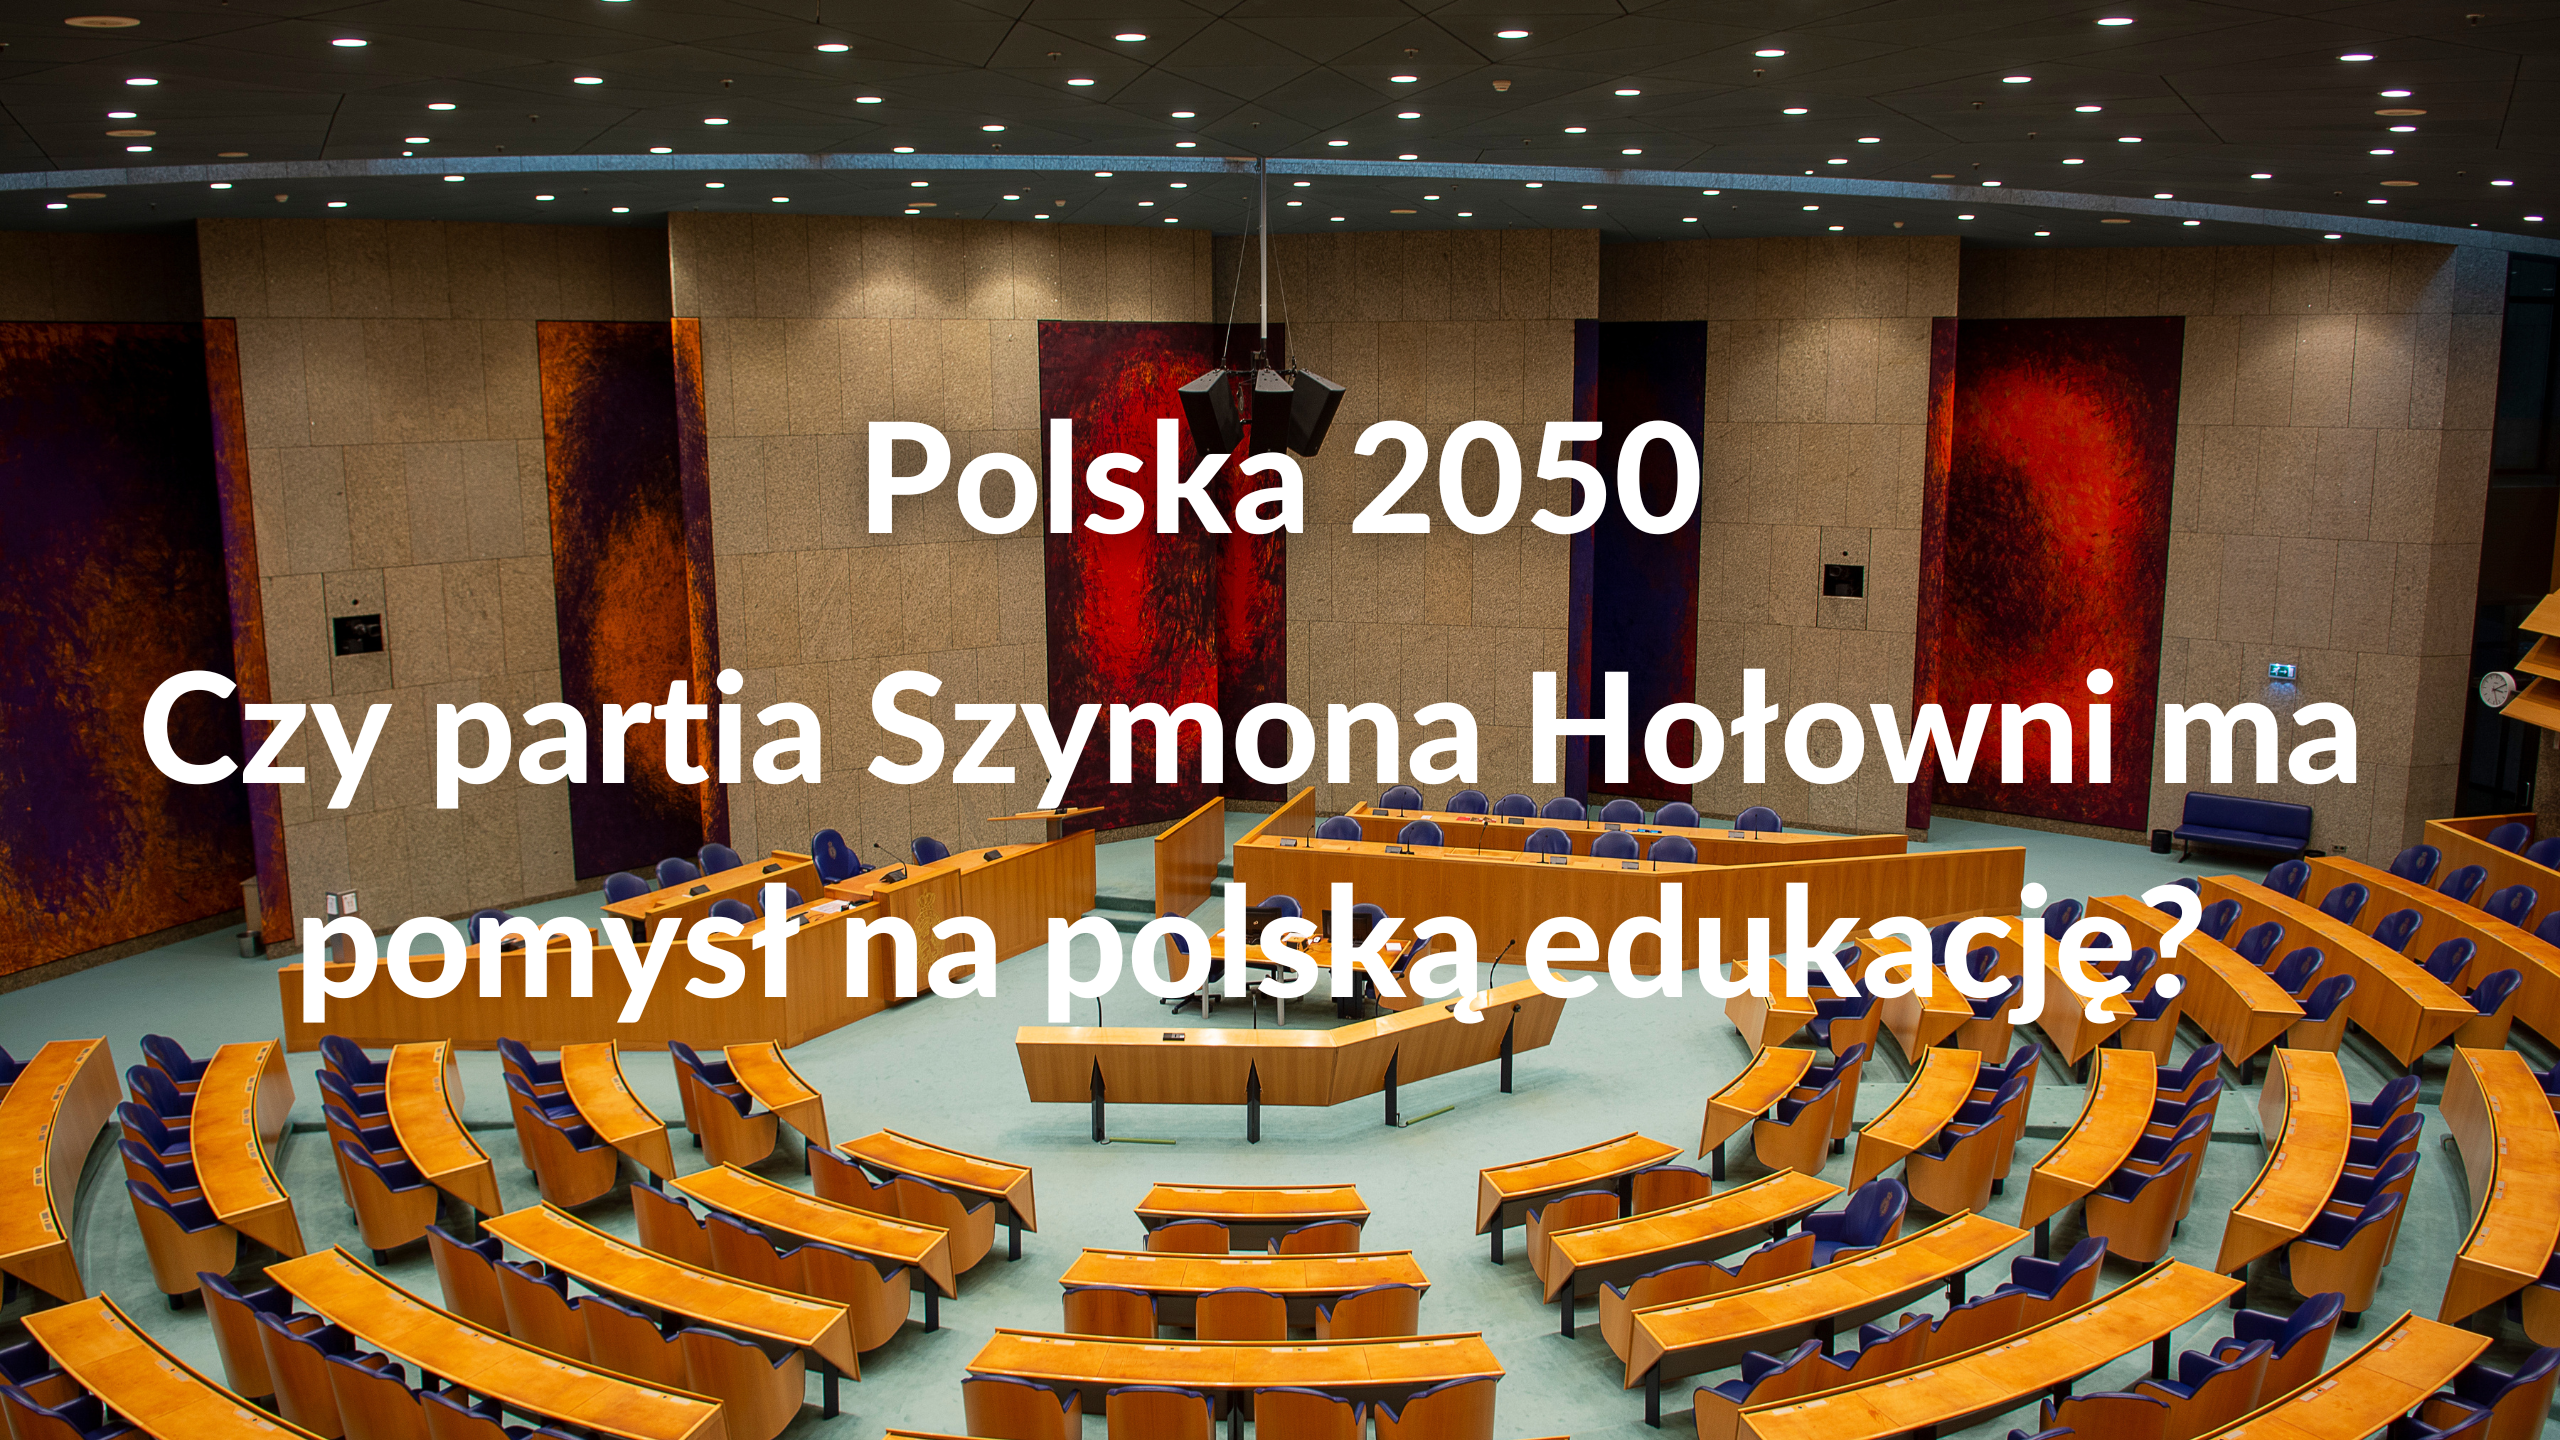 Czy partia Szymona Hołowni ma pomysł na polską edukację?